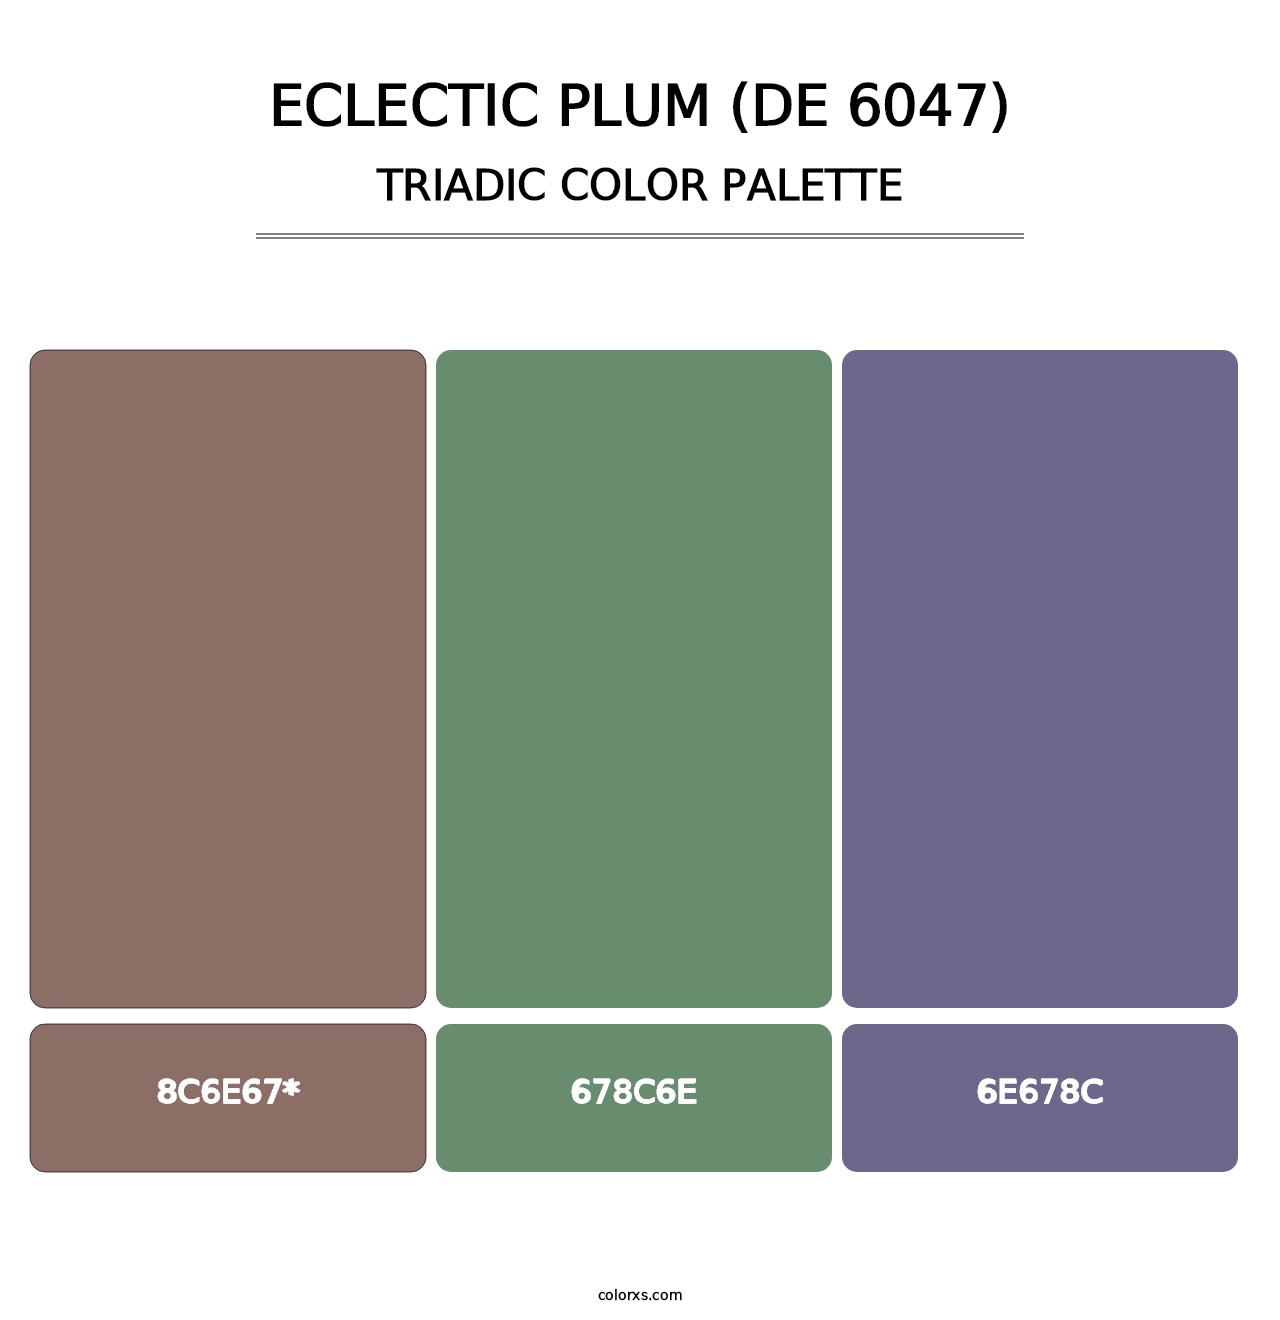 Eclectic Plum (DE 6047) - Triadic Color Palette